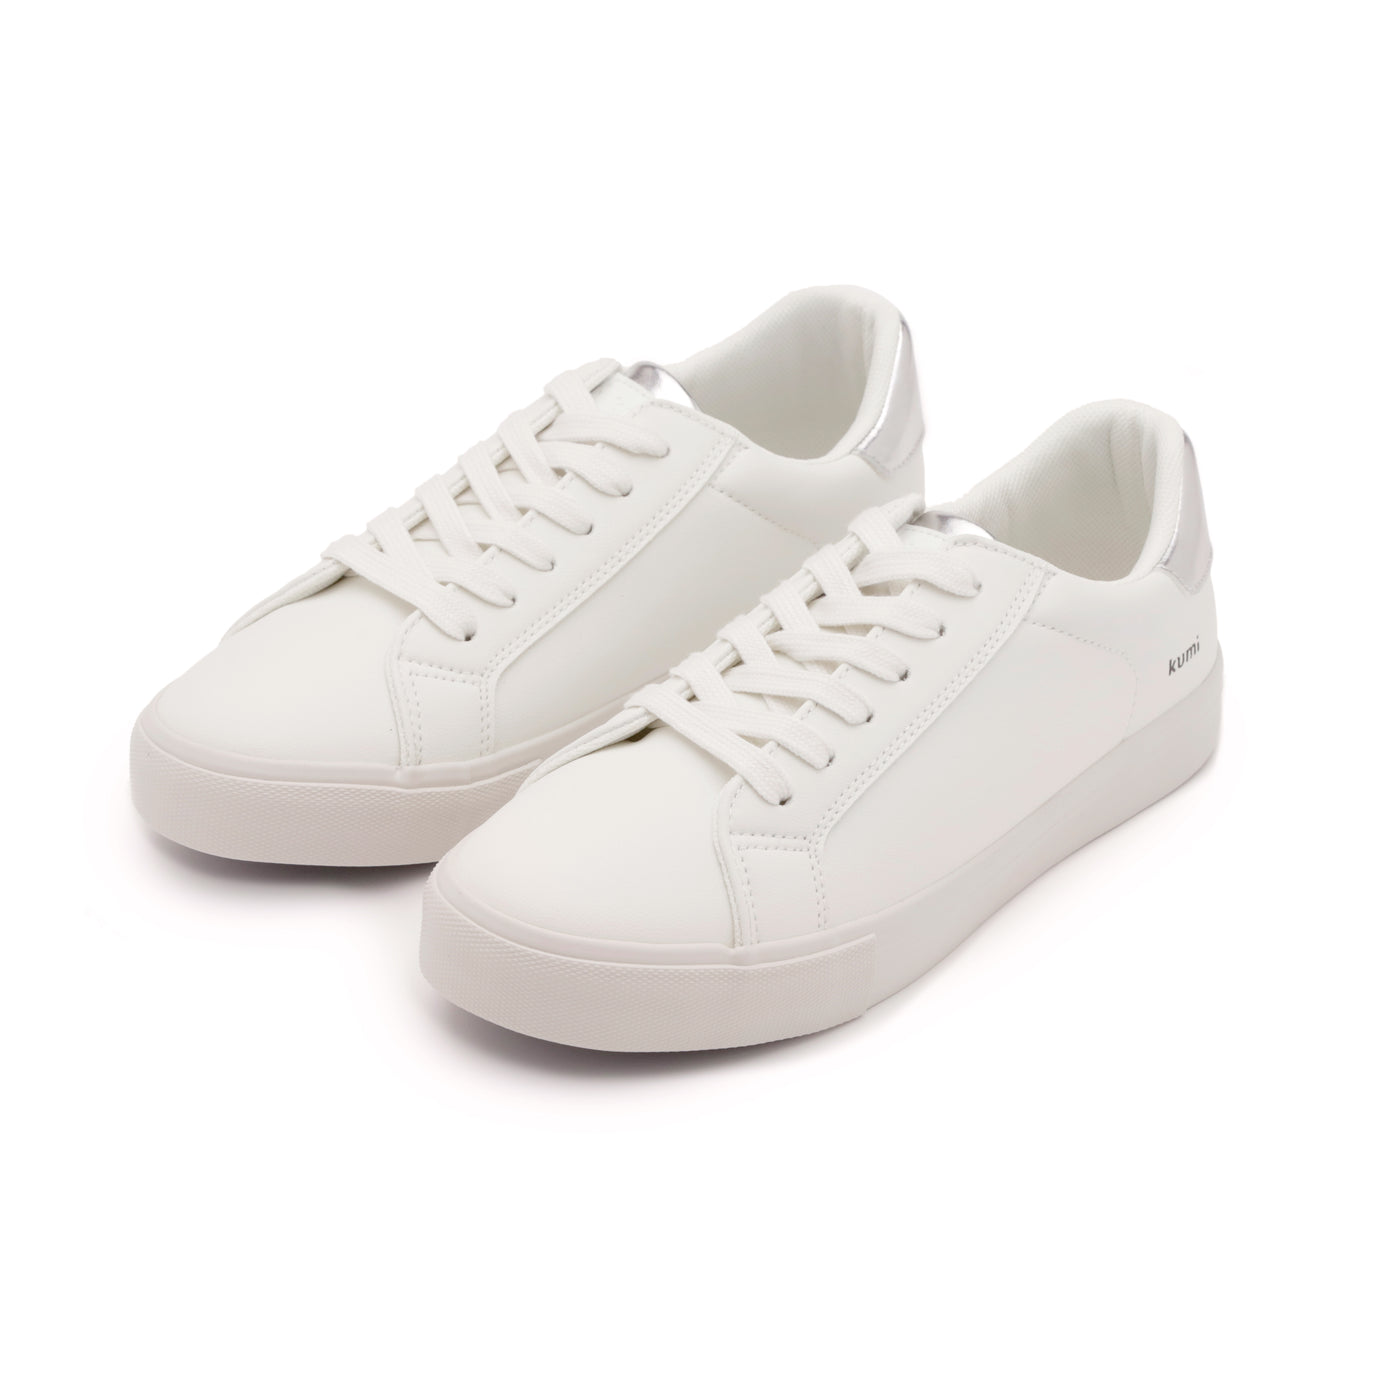 Retro sneakers White/Silver